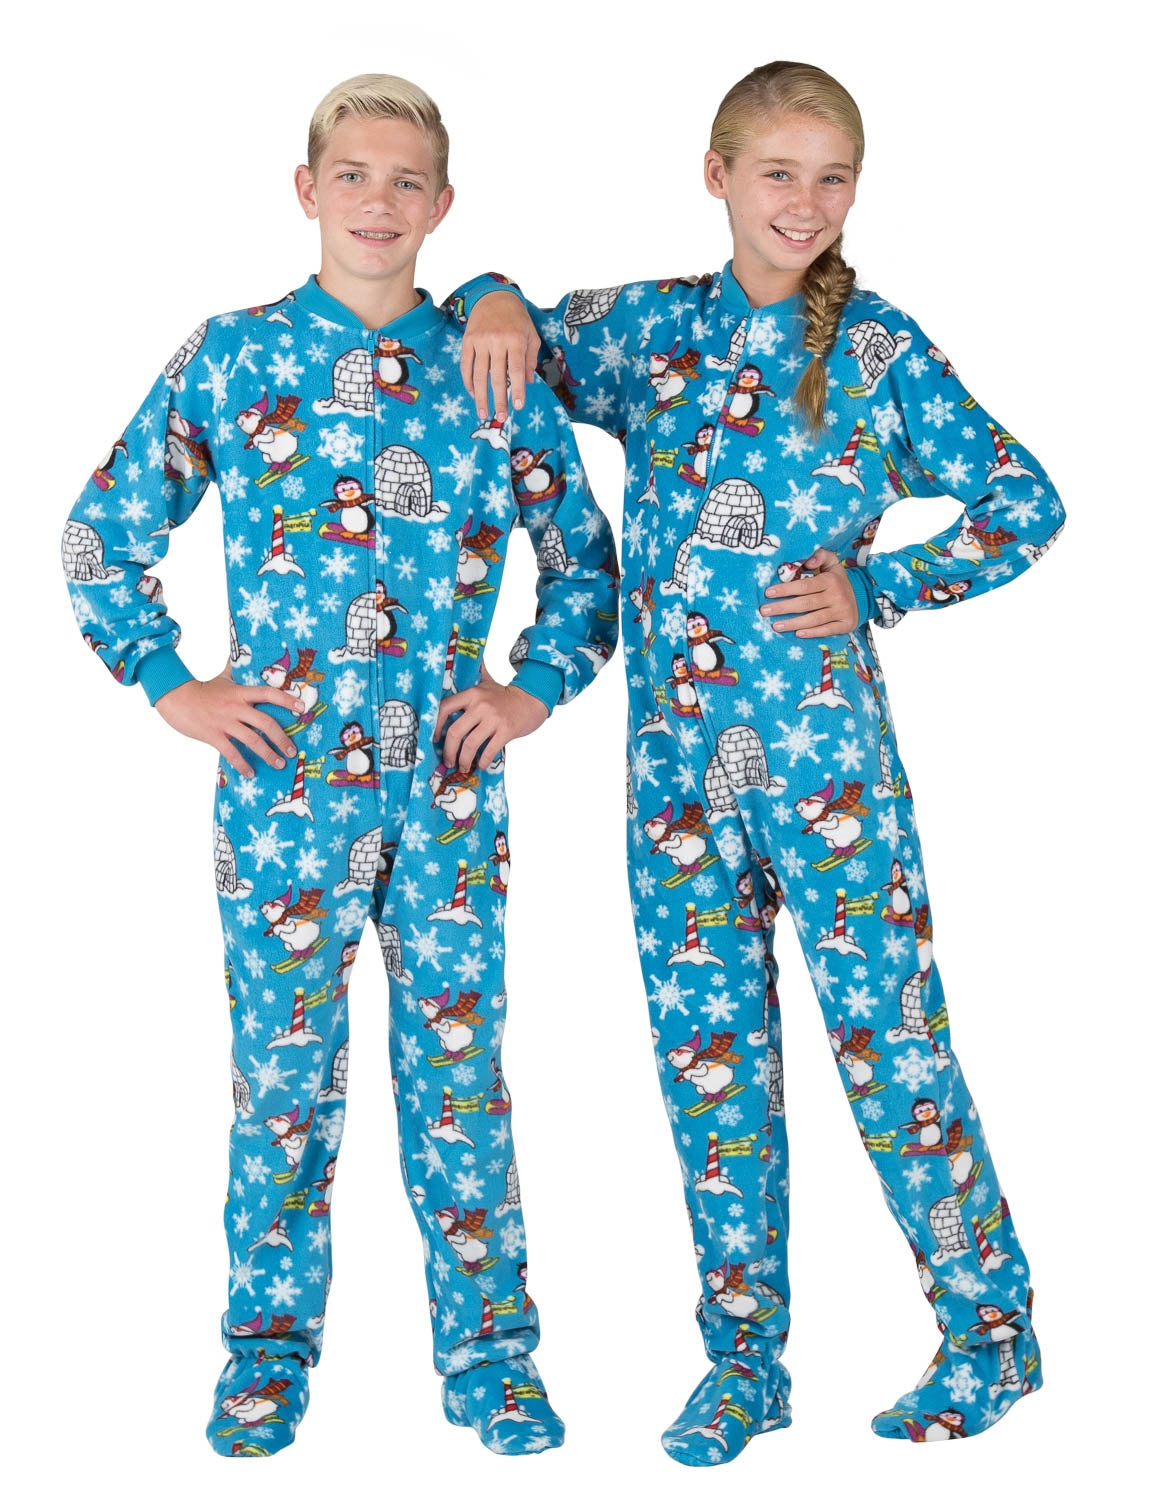 Winter Wonderland - Kids Footed Pajamas, Kids Pajamas